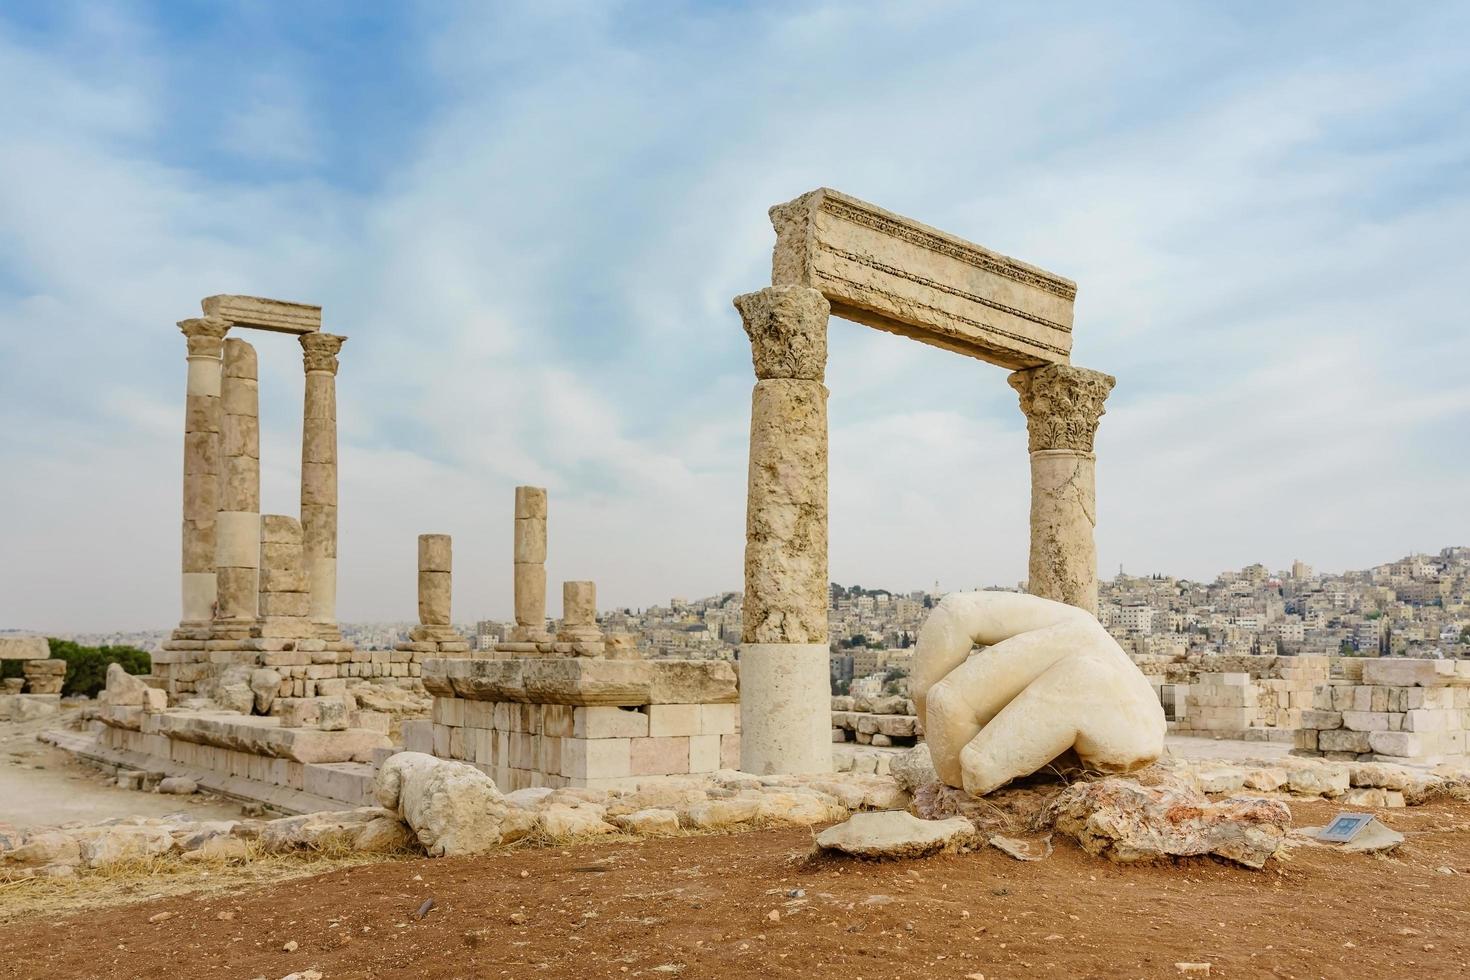 Temple of Hercules, Roman Corinthian columns at Citadel Hill in Amman, Jordan photo